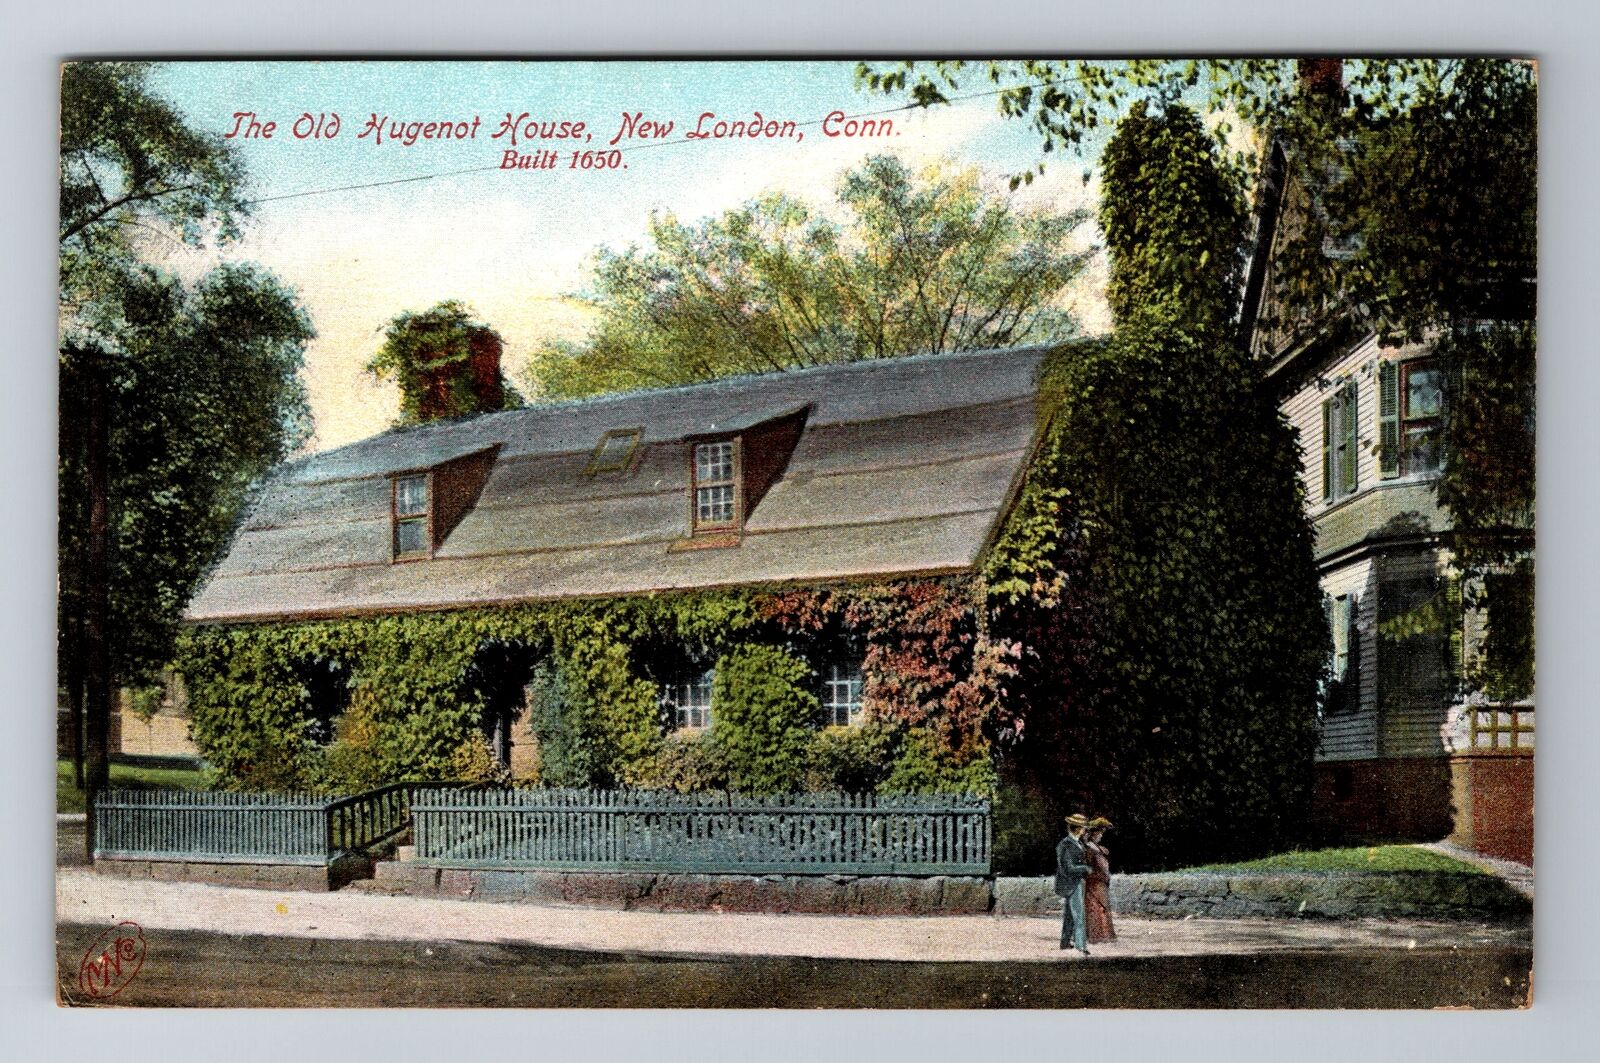 New London CT-Connecticut, Old Hugenot House, Antique Vintage Souvenir Postcard